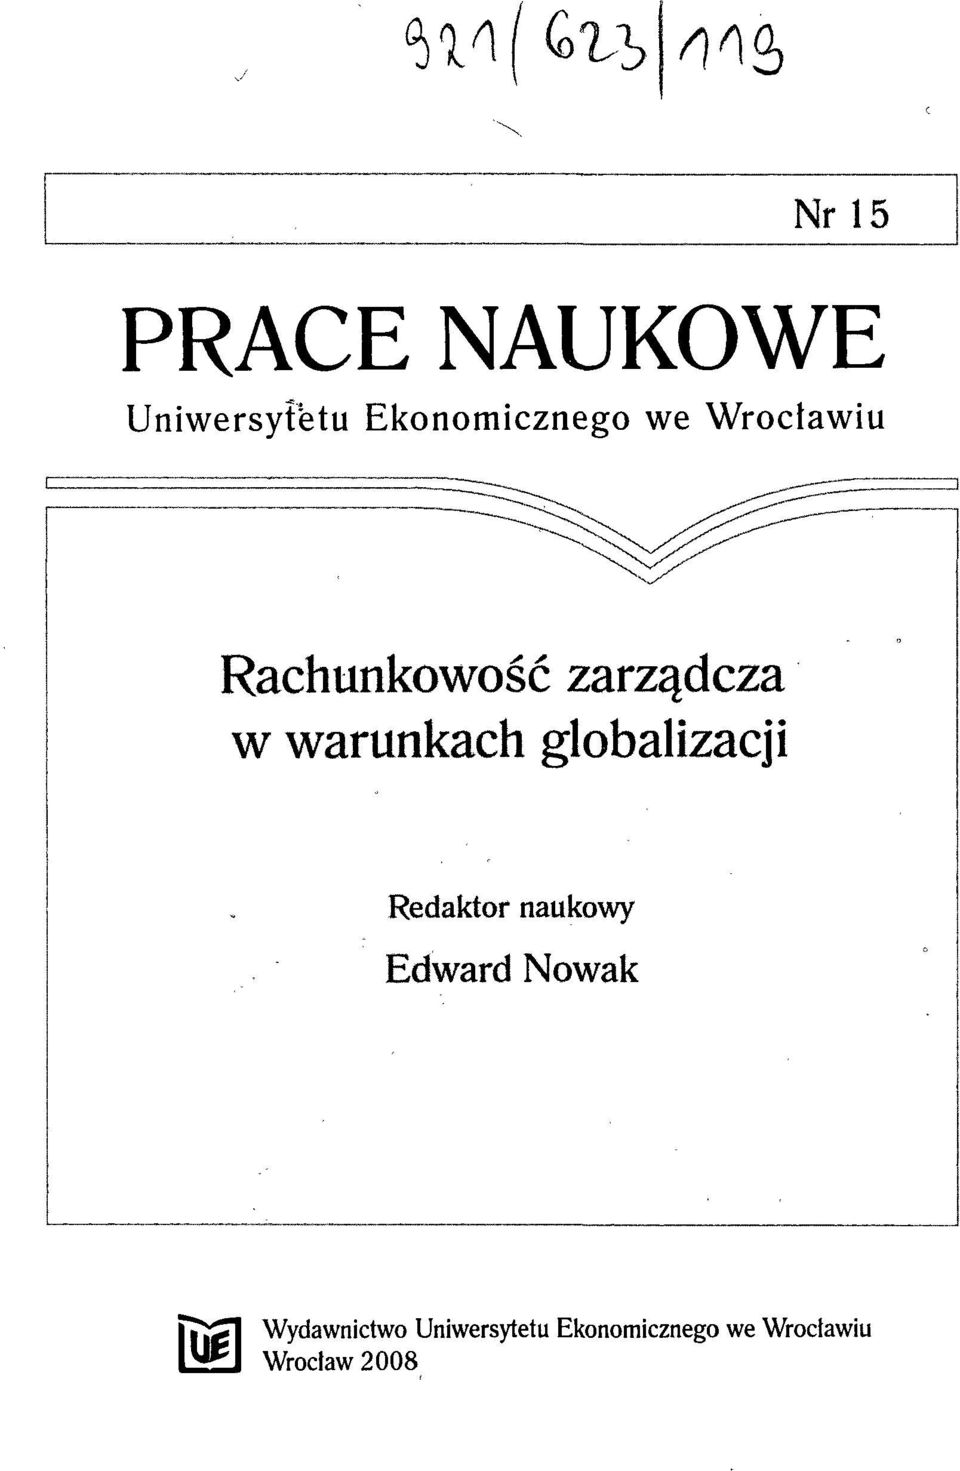 globalizacji Redaktor naukowy Edward Nowak